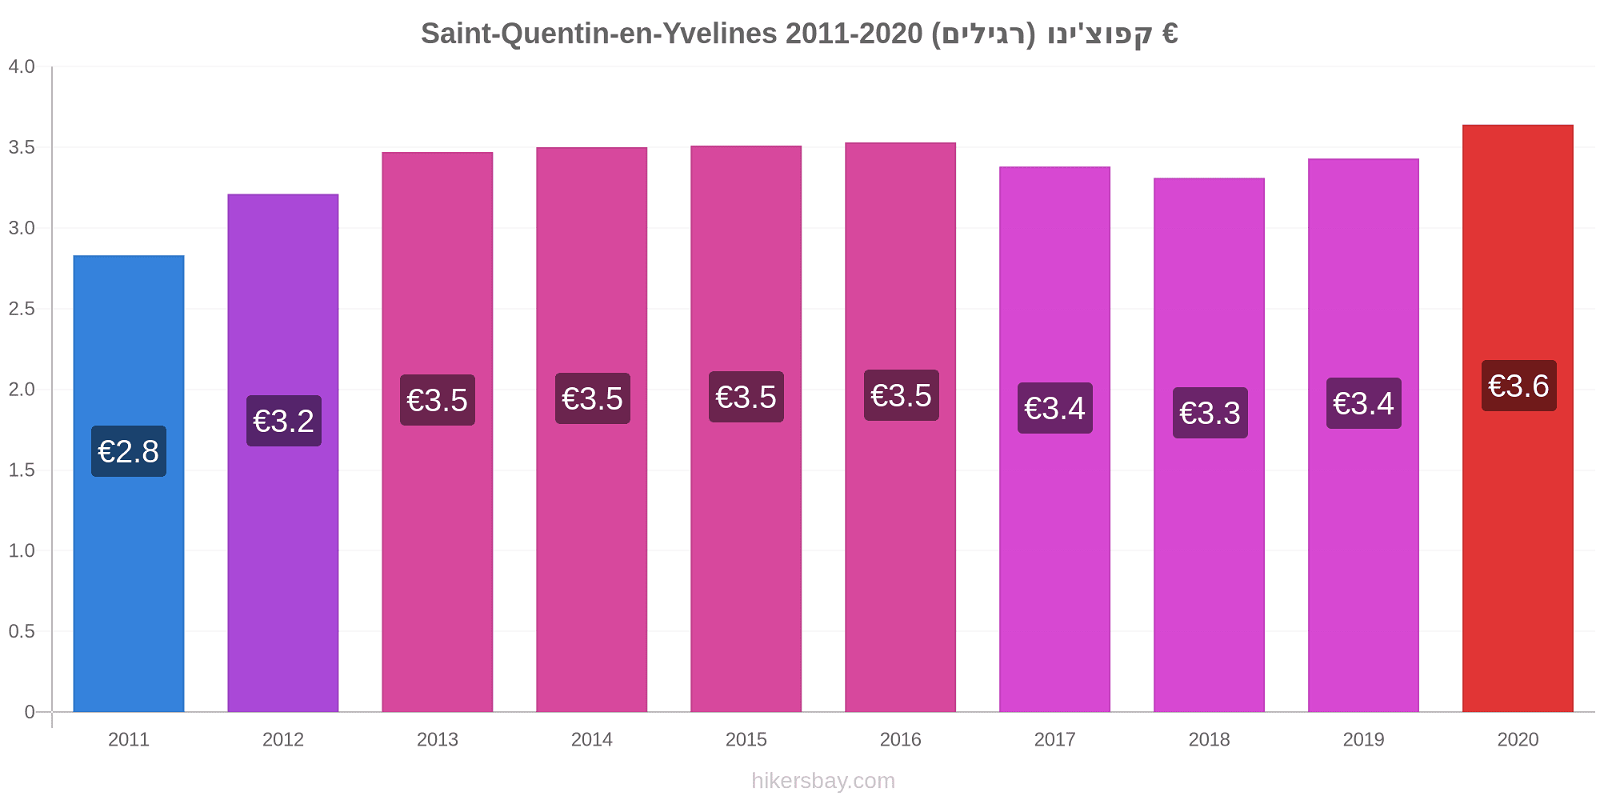 Saint-Quentin-en-Yvelines שינויי מחירים קפוצ'ינו (רגילים) hikersbay.com